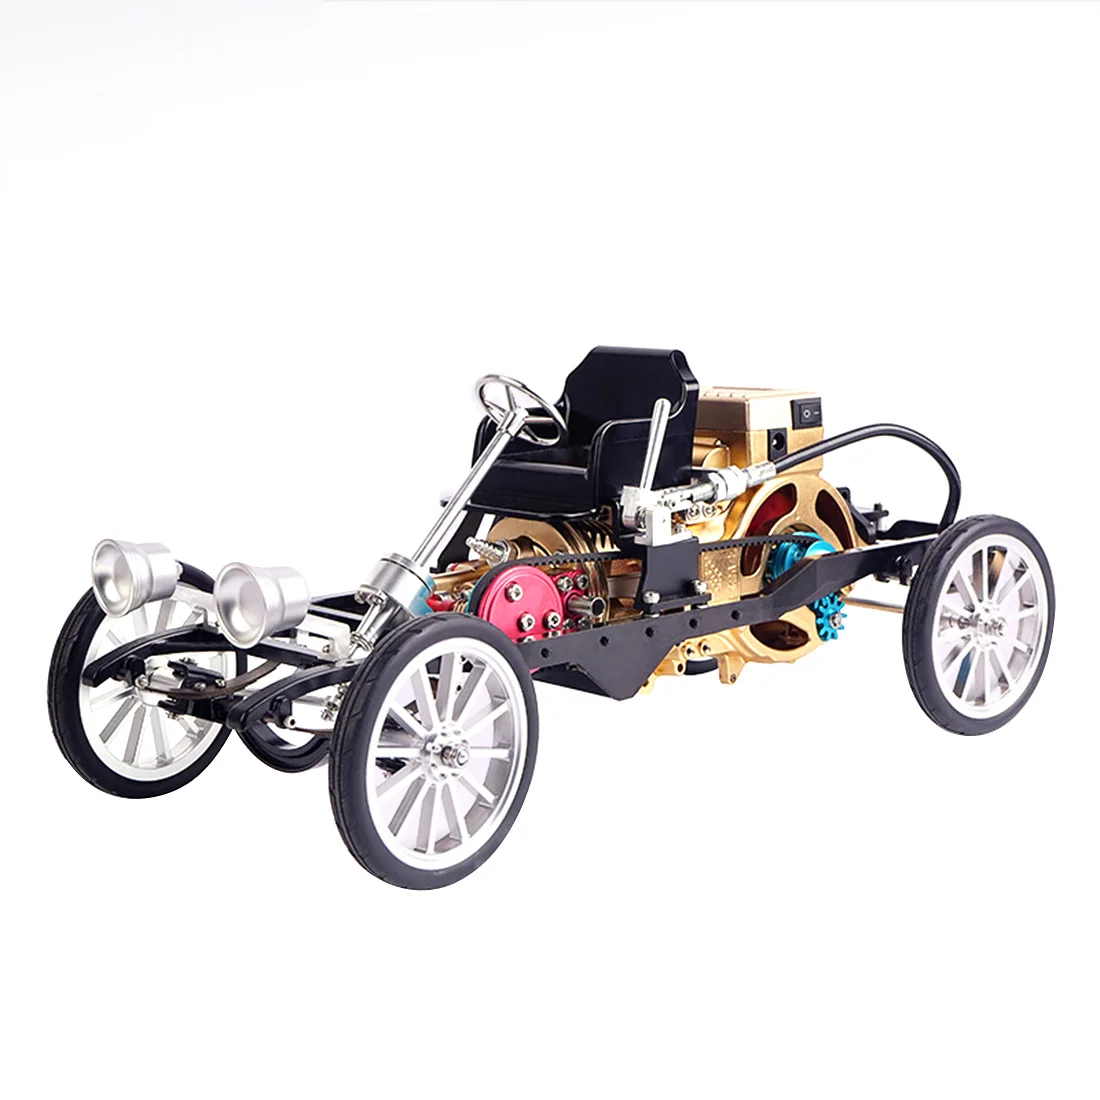 buy 金属单缸发动机模型玩具,迷你汽车组装模型玩具,礼品套装